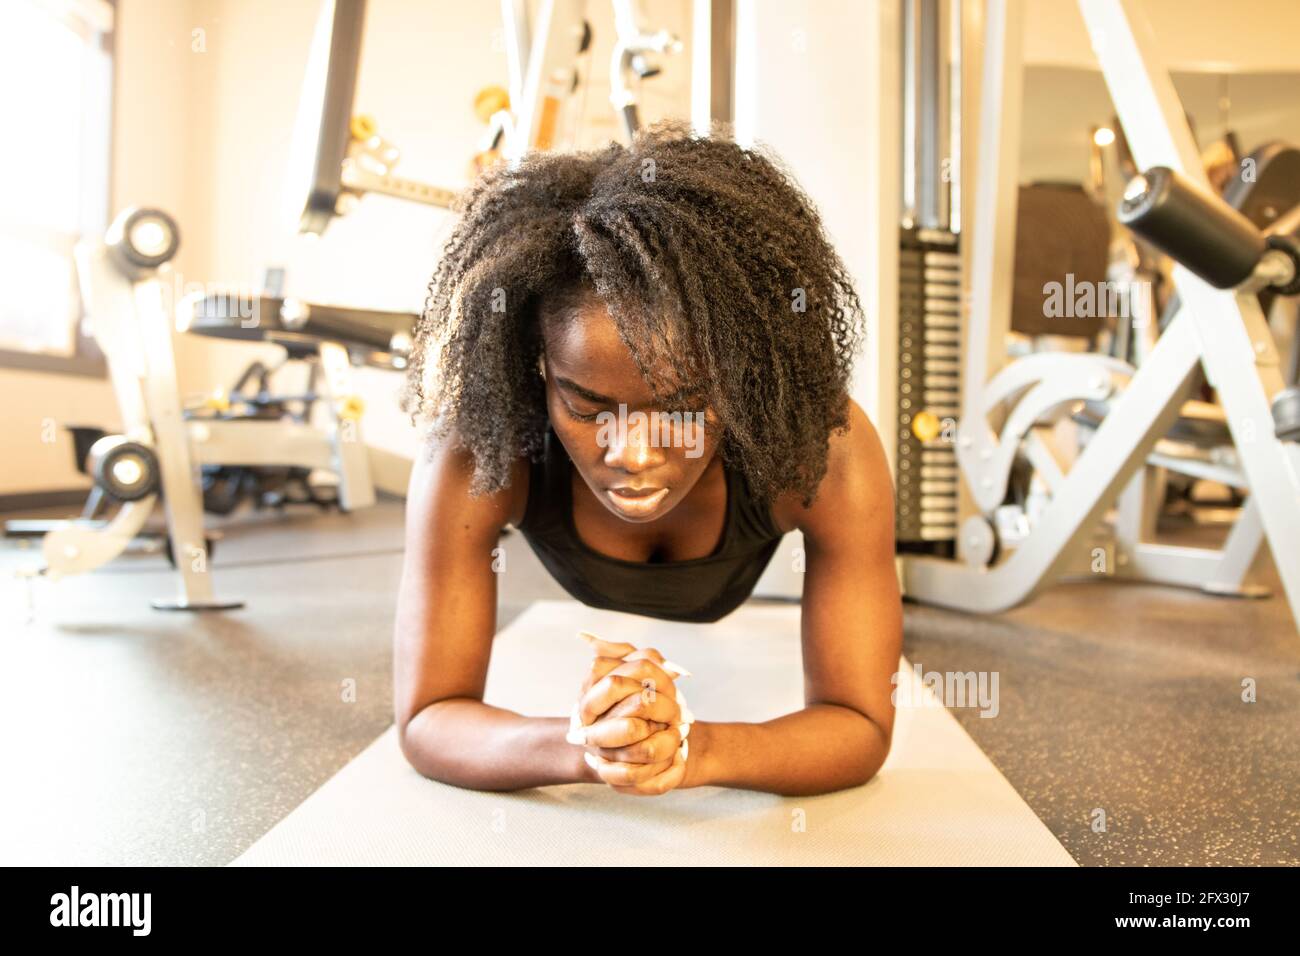 https://c8.alamy.com/compes/2fx30j7/chica-hermosa-en-el-gimnasio-chica-deportiva-en-el-entrenamiento-de-ropa-deportiva-una-persona-de-cerca-mujer-negra-afroamericana-pelo-natural-de-fondo-gimnasio-2fx30j7.jpg